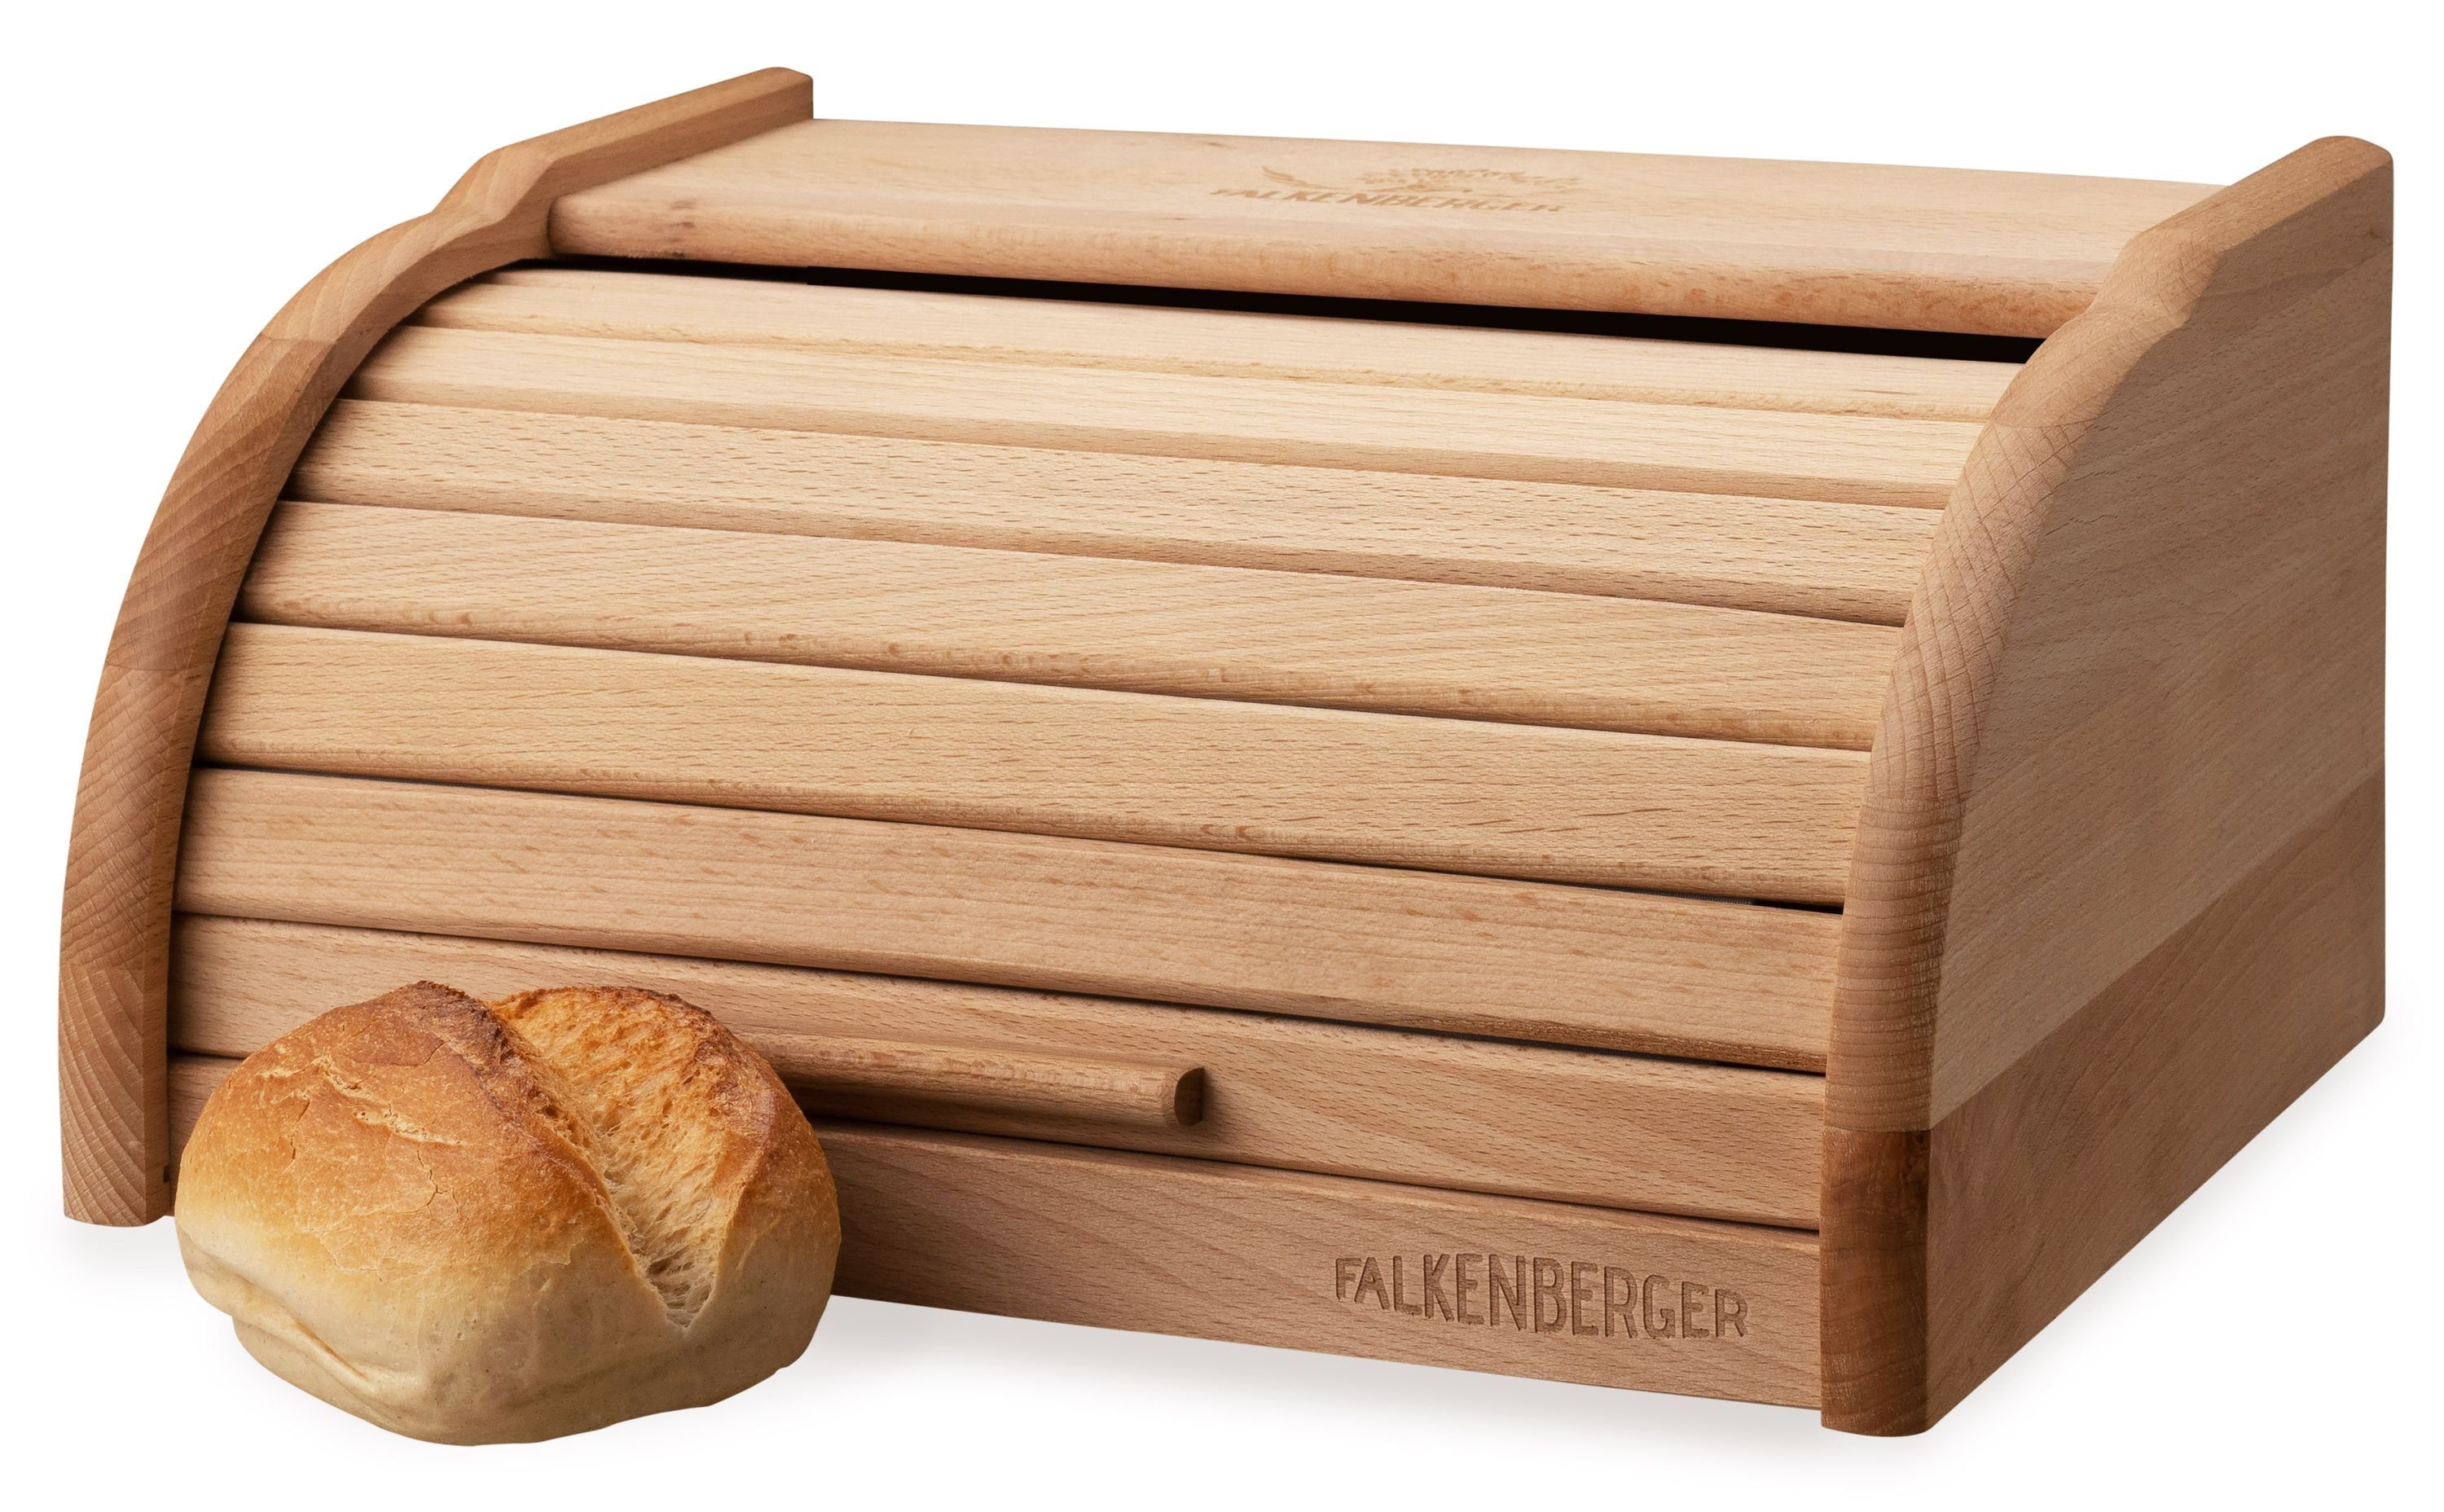 FALKENBERGER Brotkasten Brotkasten M 31,7x24,8x15,5cm, Holz, (1-tlg., 1 Teilig), Rollbrotkasten traditionell Brotbox mit Roll-Deckel für Brot Handmade